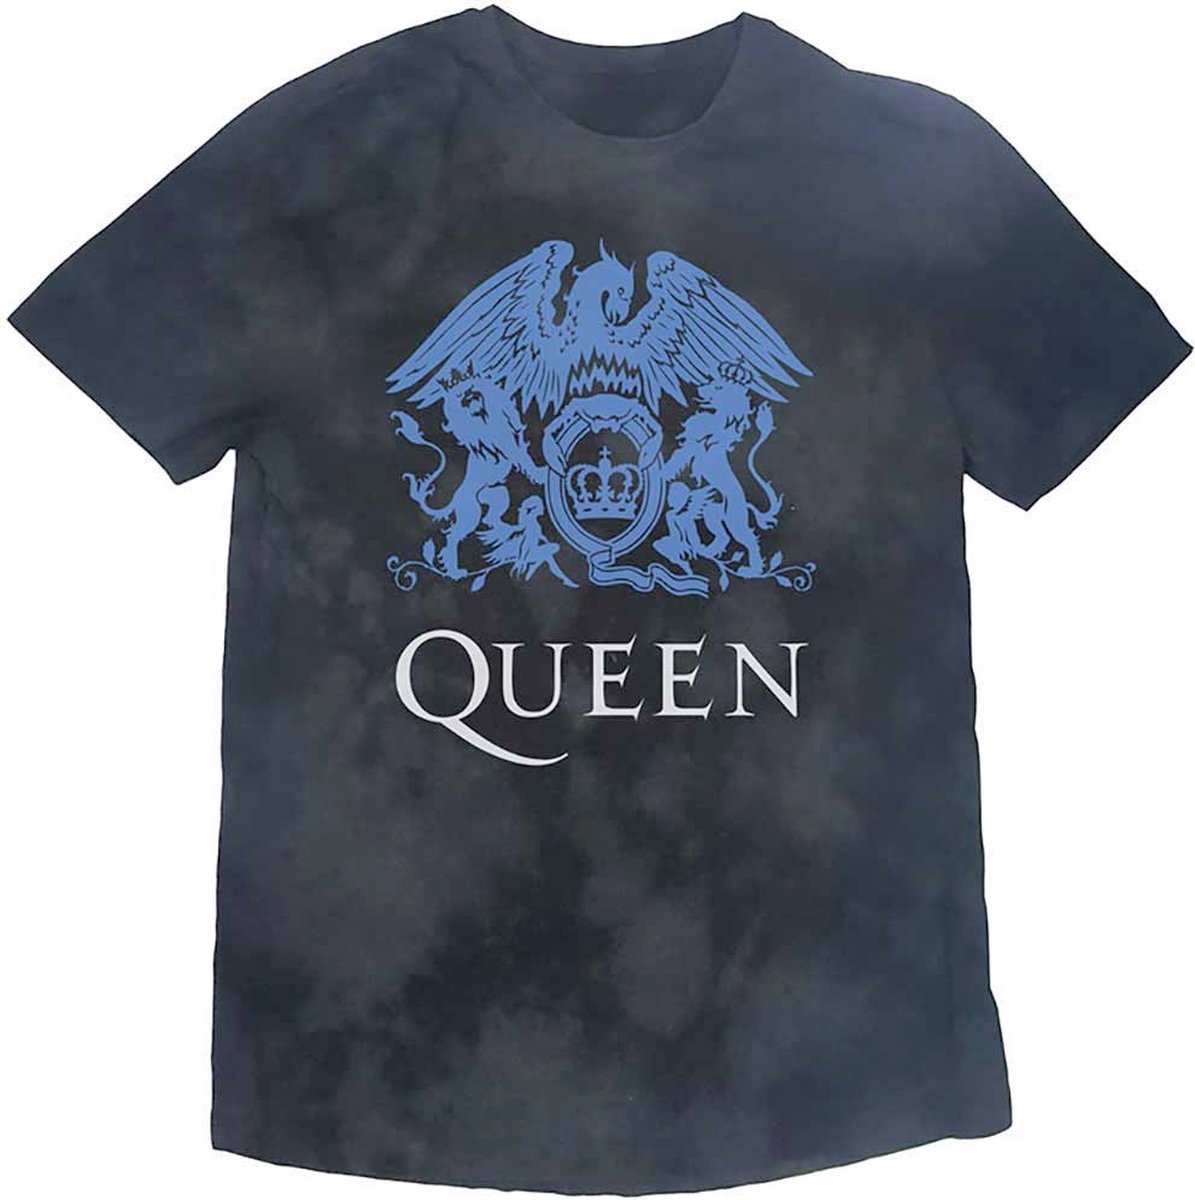 Queen - Blue Crest Kinder T-shirt - Kids tm 6 jaar - Zwart